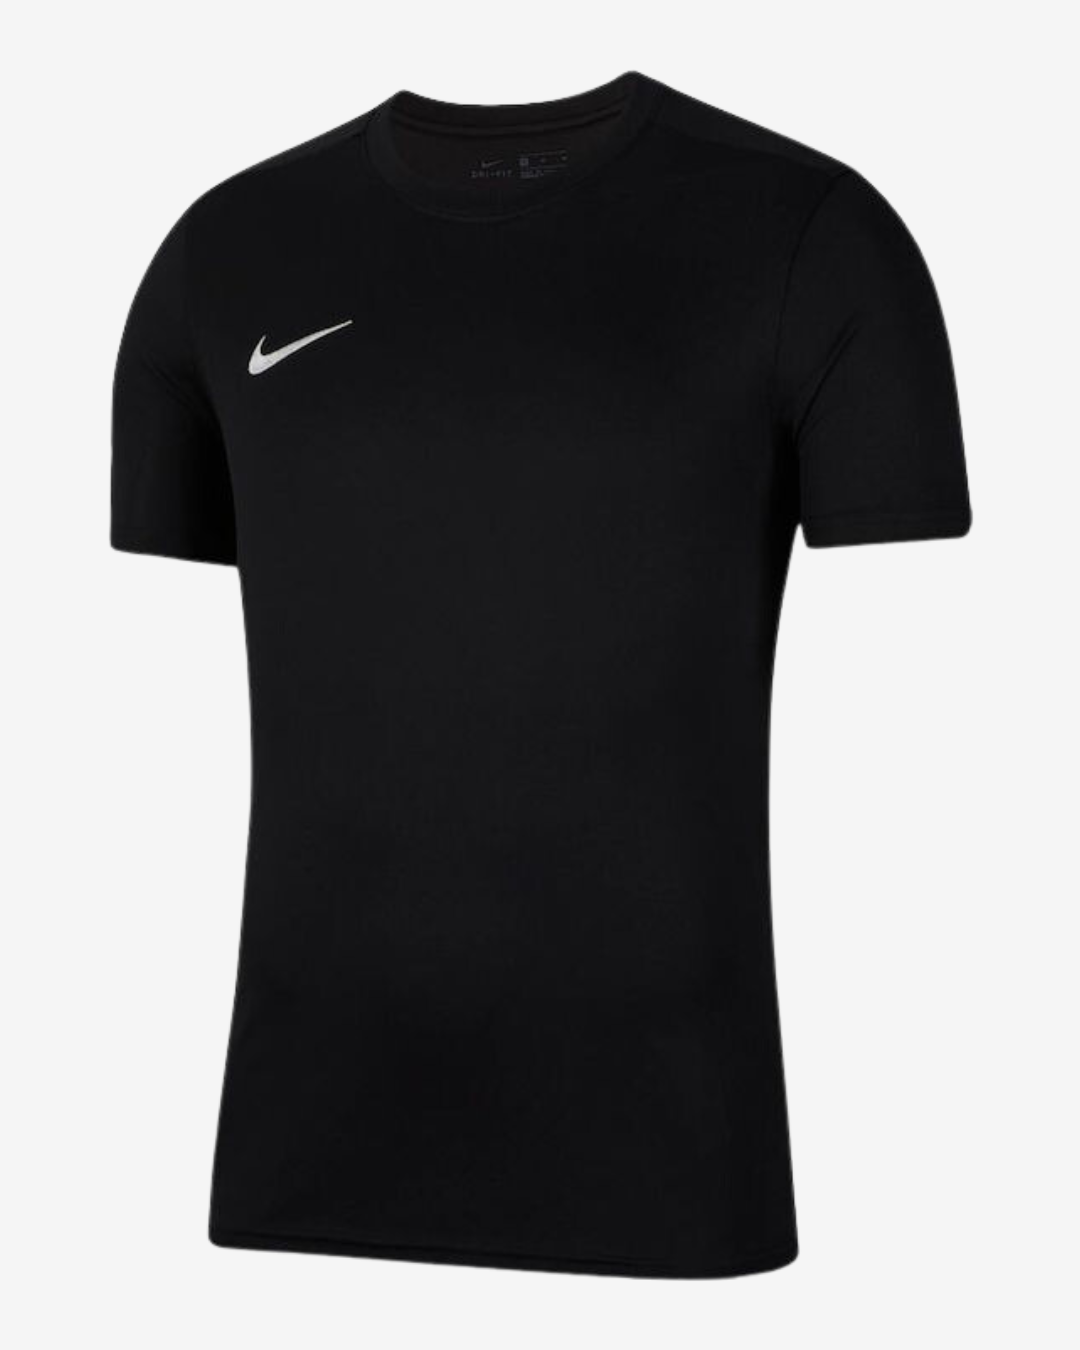 Billede af Nike Dri-fit park 7 t-shirt - Sort - Str. S - Modish.dk